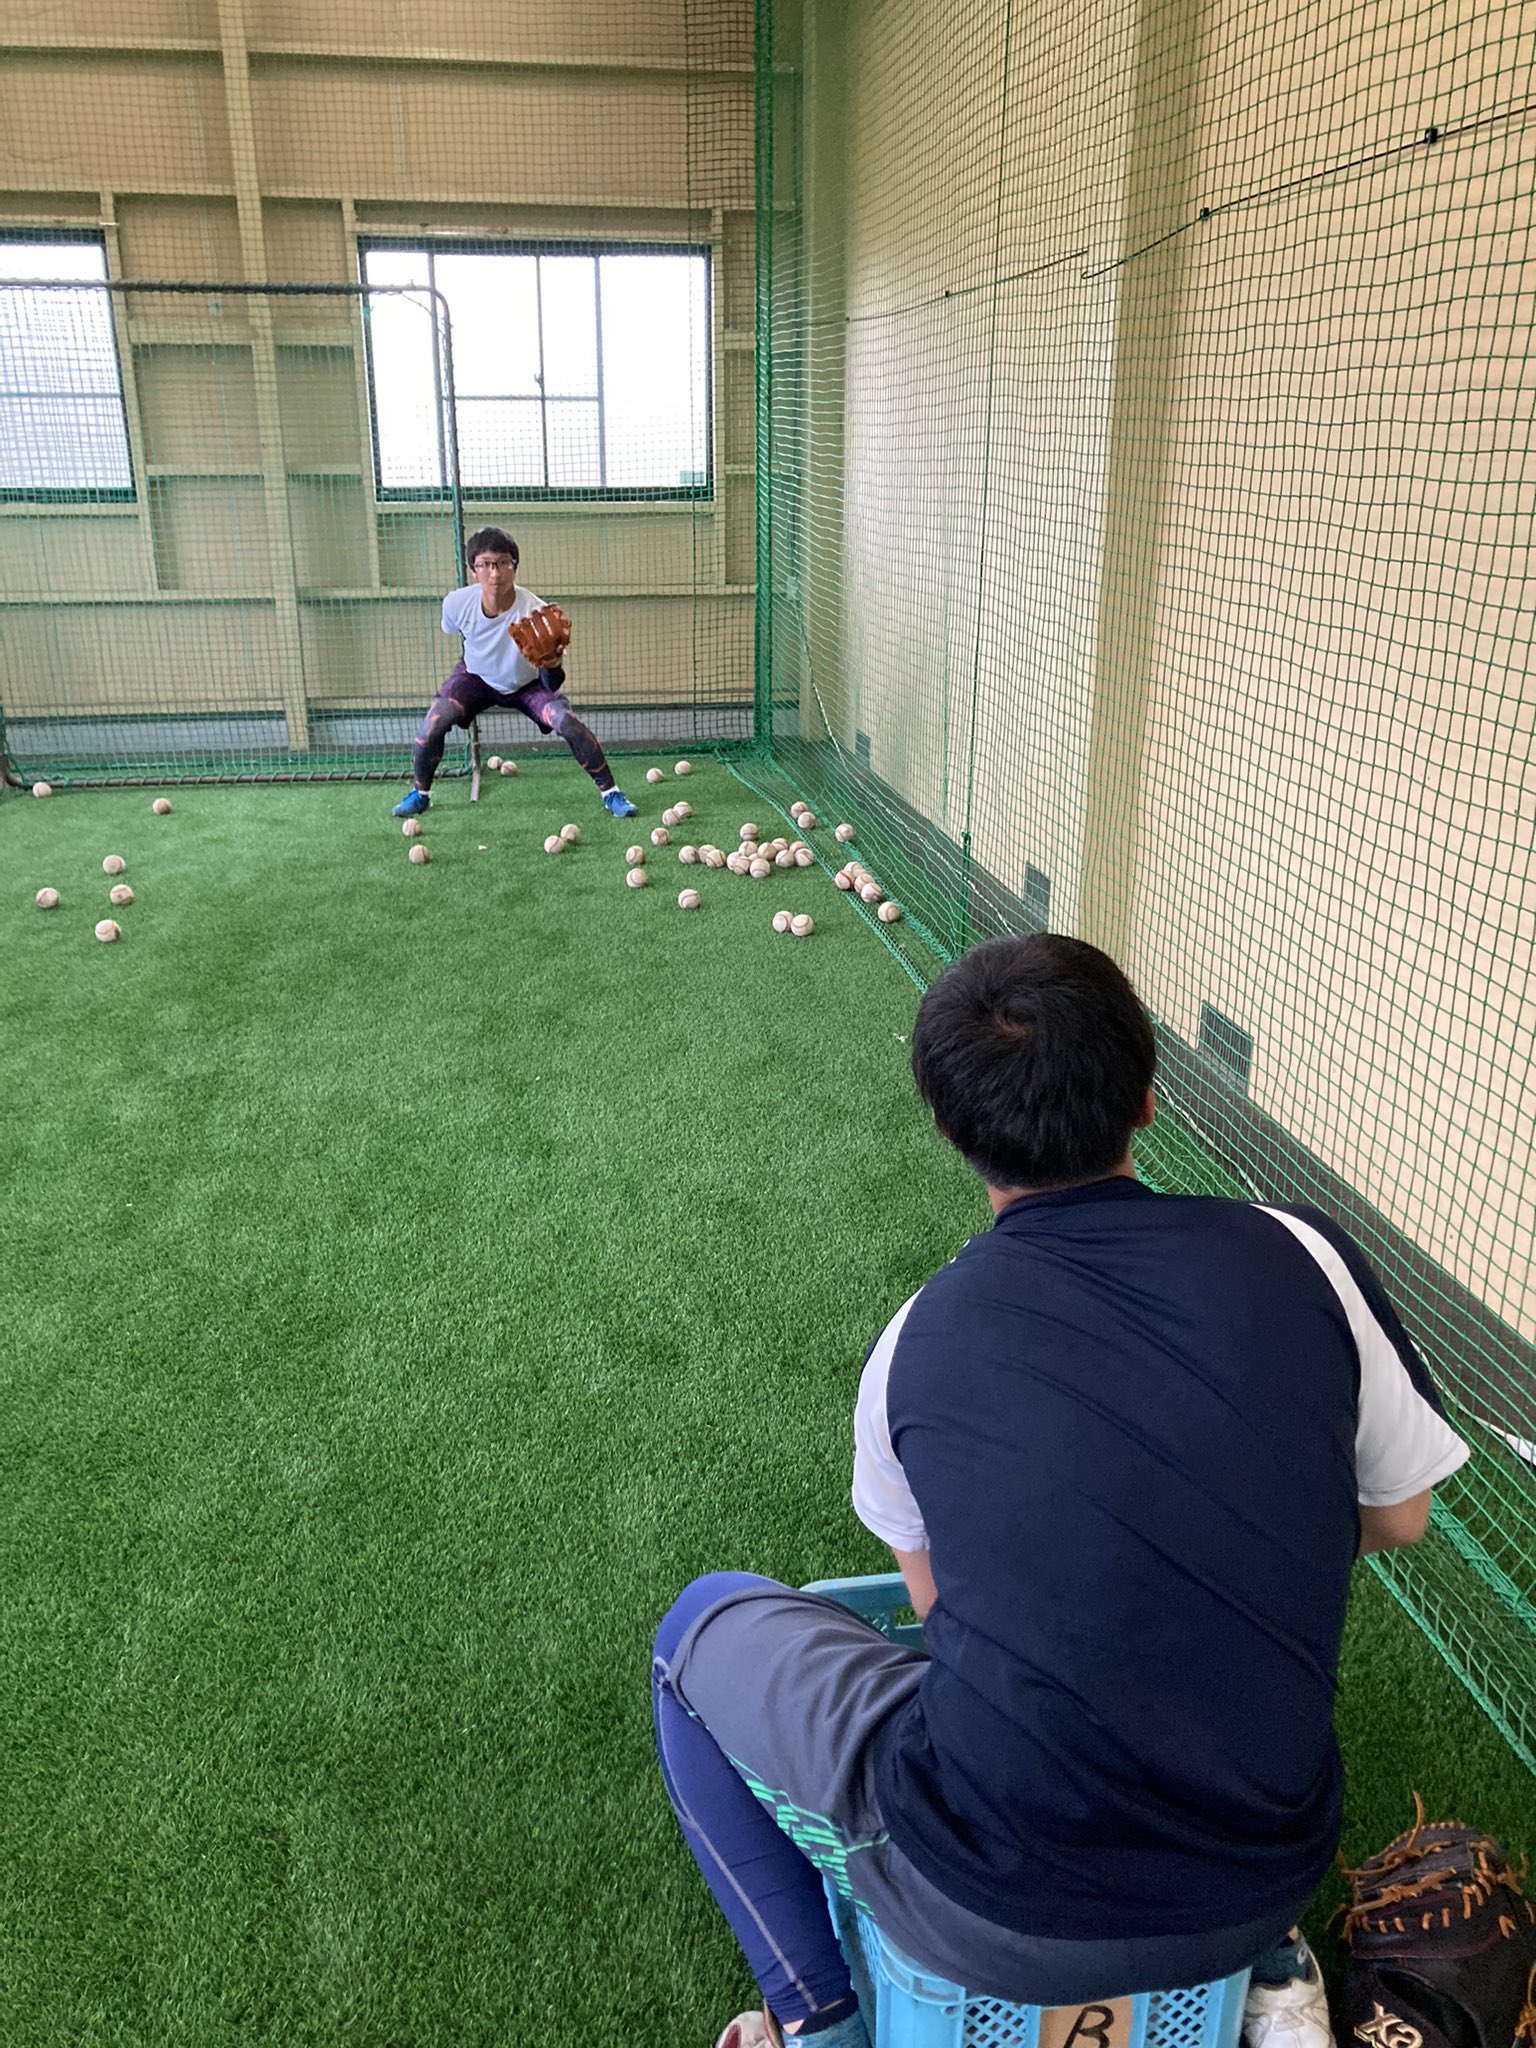 日本プロスポーツ専門学校野球部 本日は雨の為 室内練習でした 日本プロスポーツ専門学校 リーグ 社会人野球 独立リーグ プロ野球 高校野球 大学野球 スポーツトレーナー トレーナー資格 トレーニング 専門学校 進路 高校卒業 硬式野球